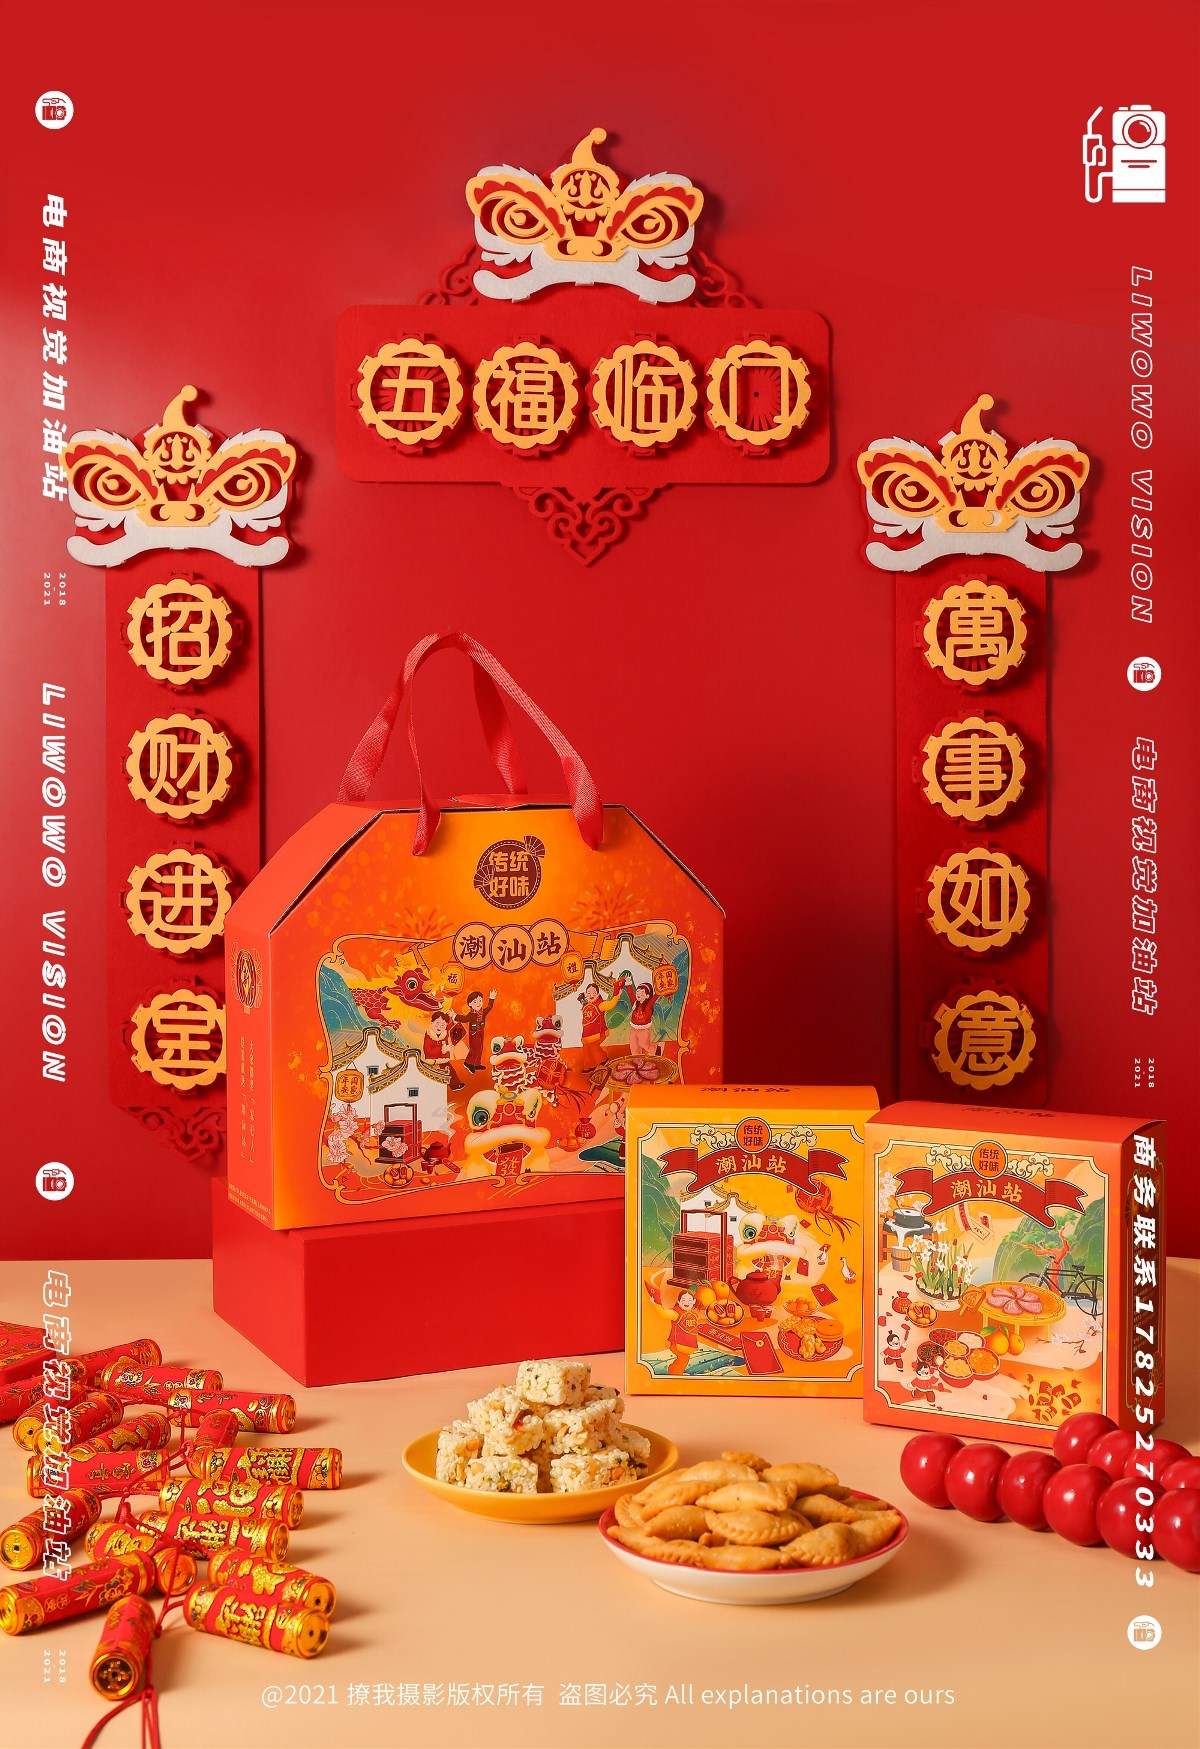 食品拍摄 | 潮汕站 x 春节礼盒系列 x LIAOWO VISION